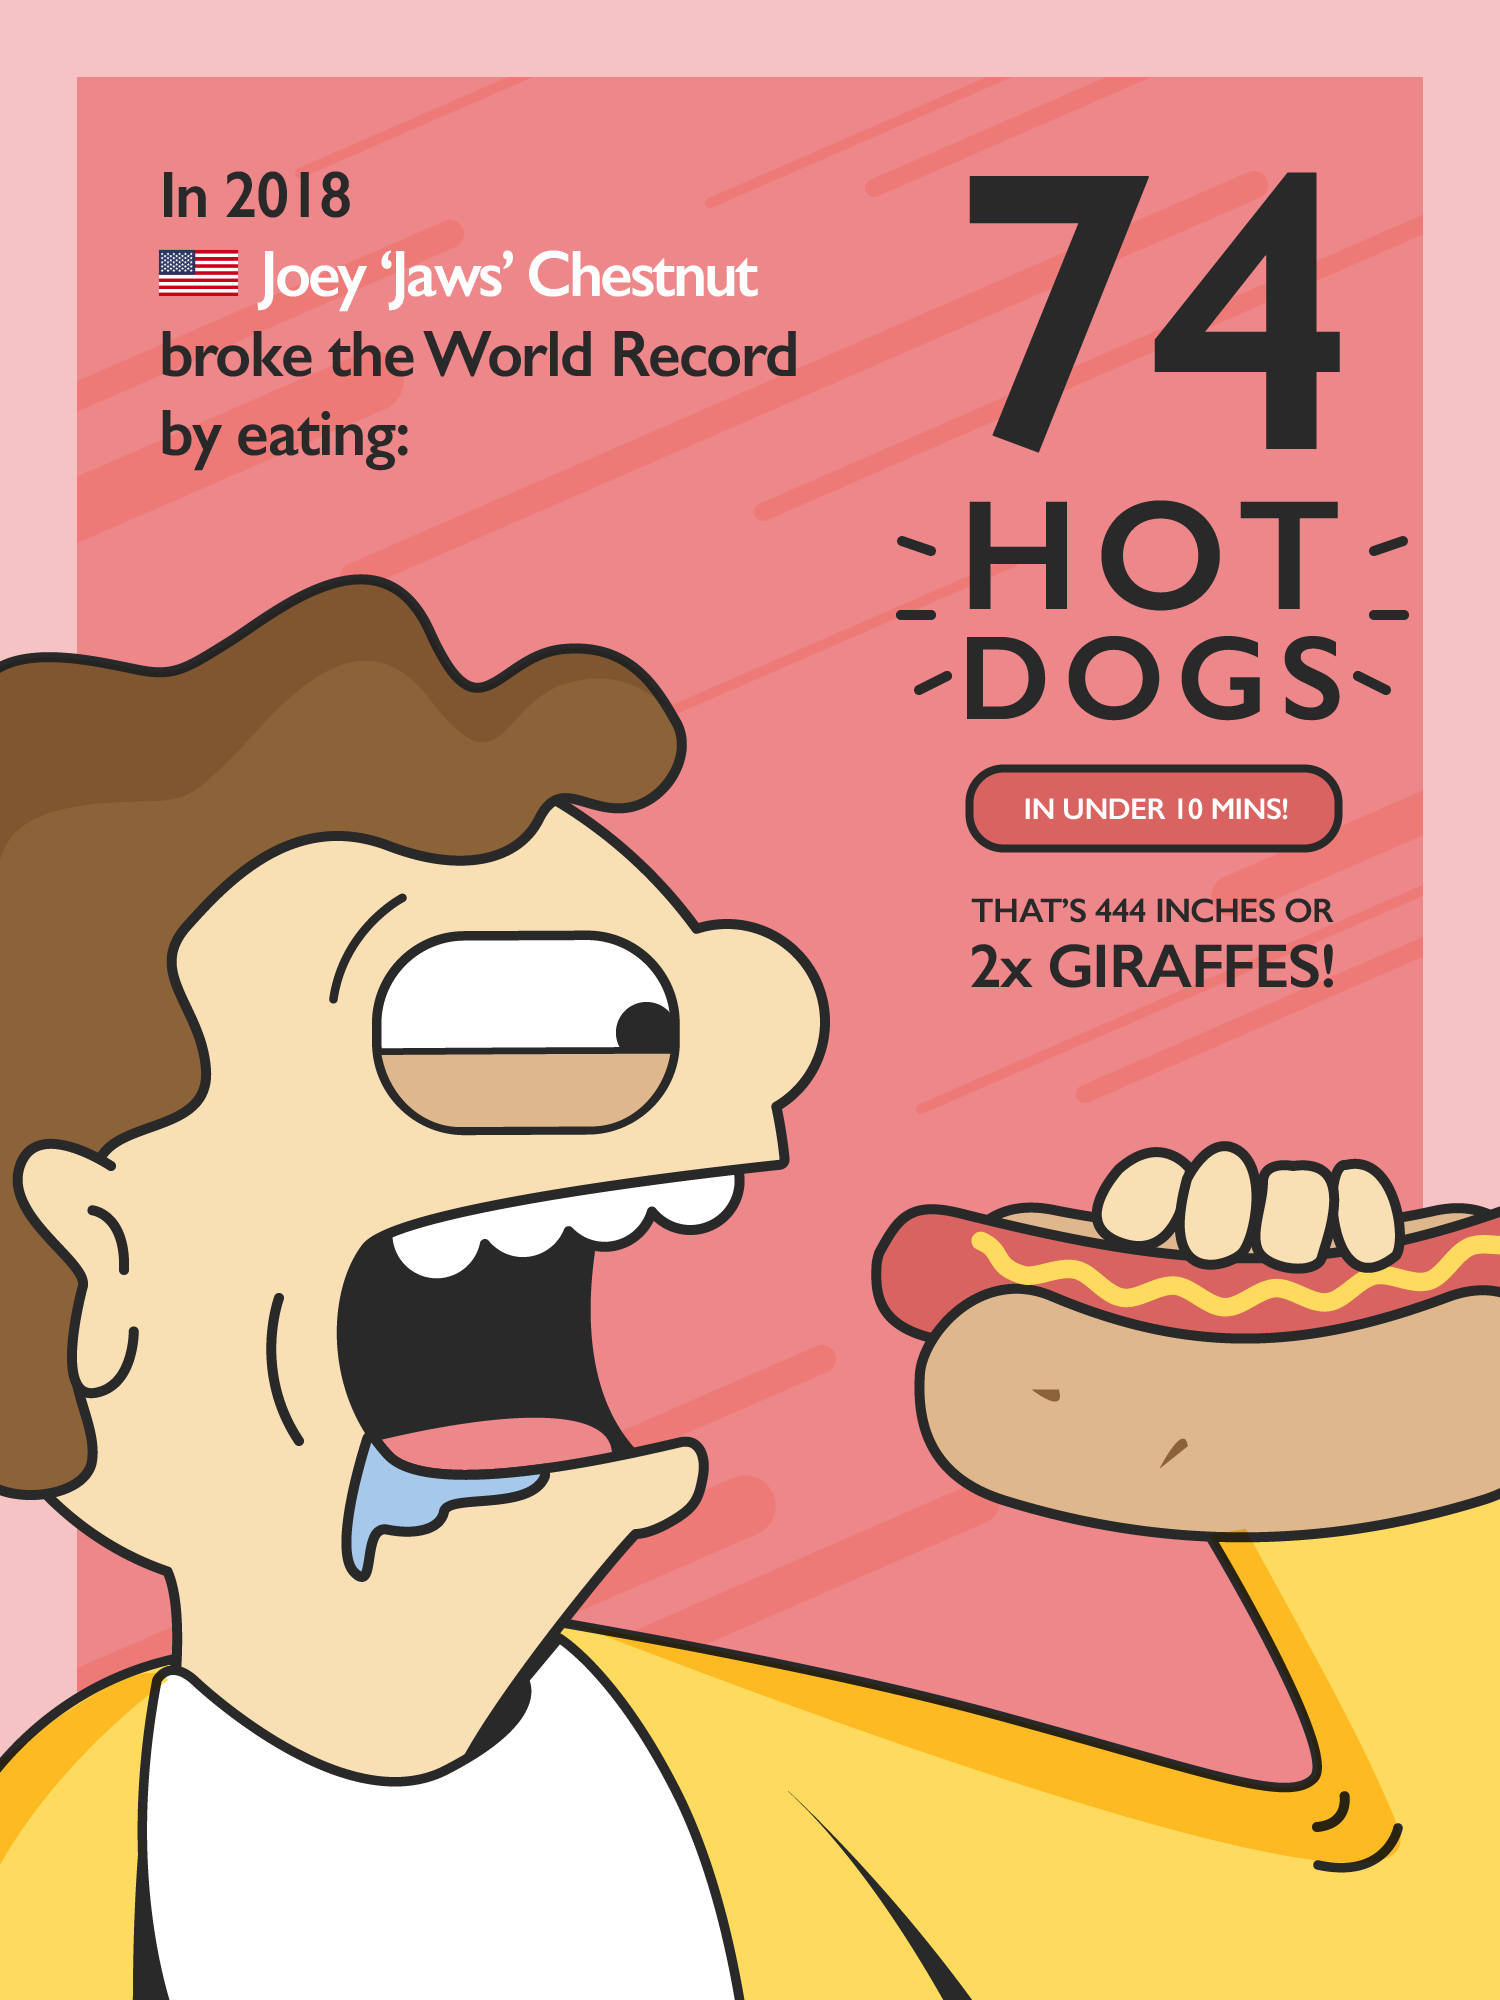 Joey Chestnut - 74 Hotdogs in 10 Minutes